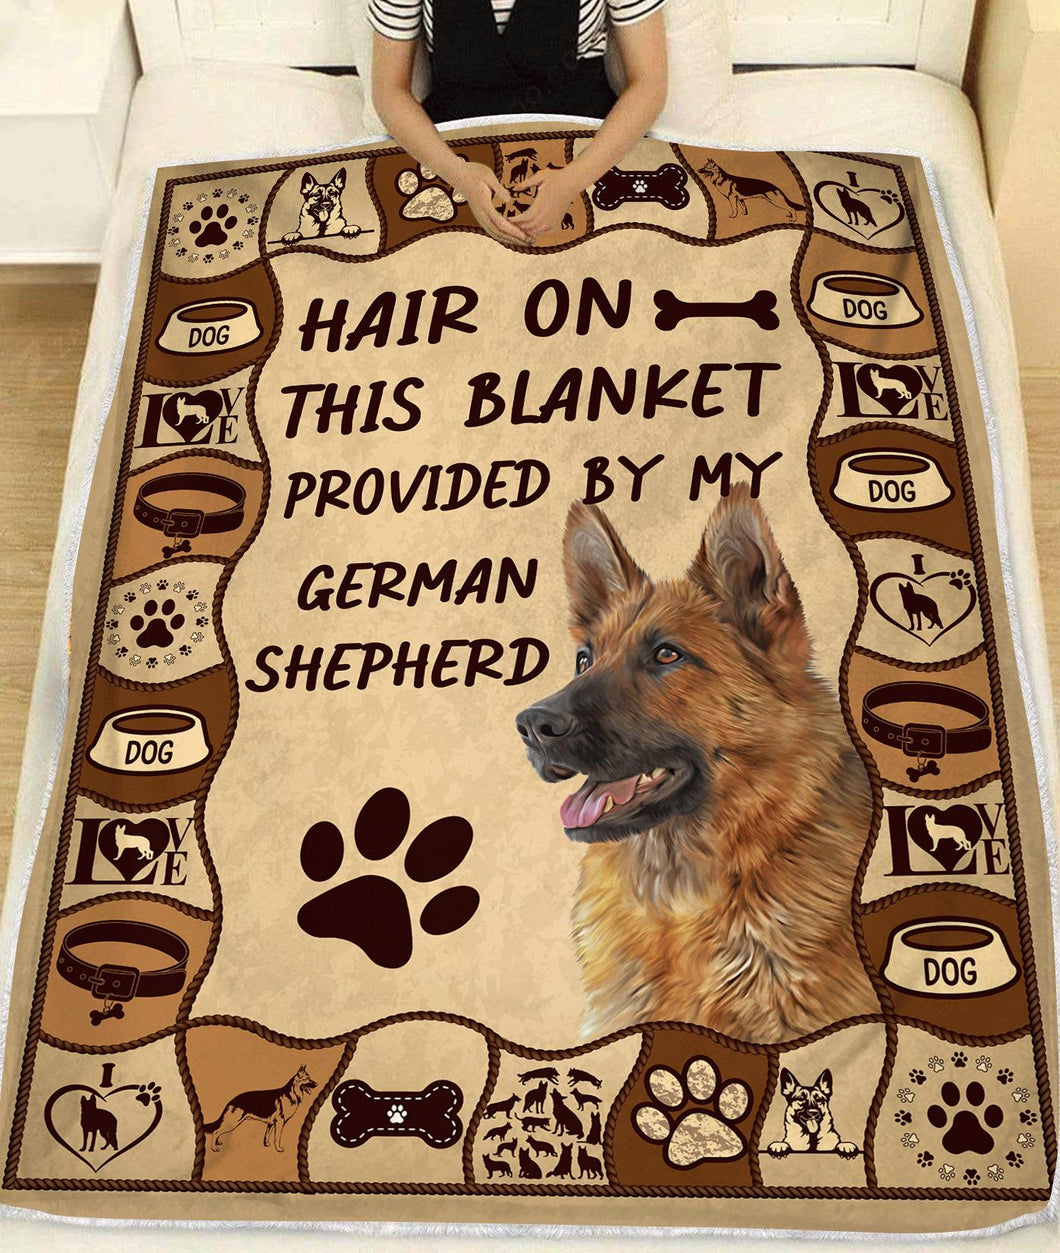 German Shepherd Hair On This Blanket - Dog Fleece Blanket